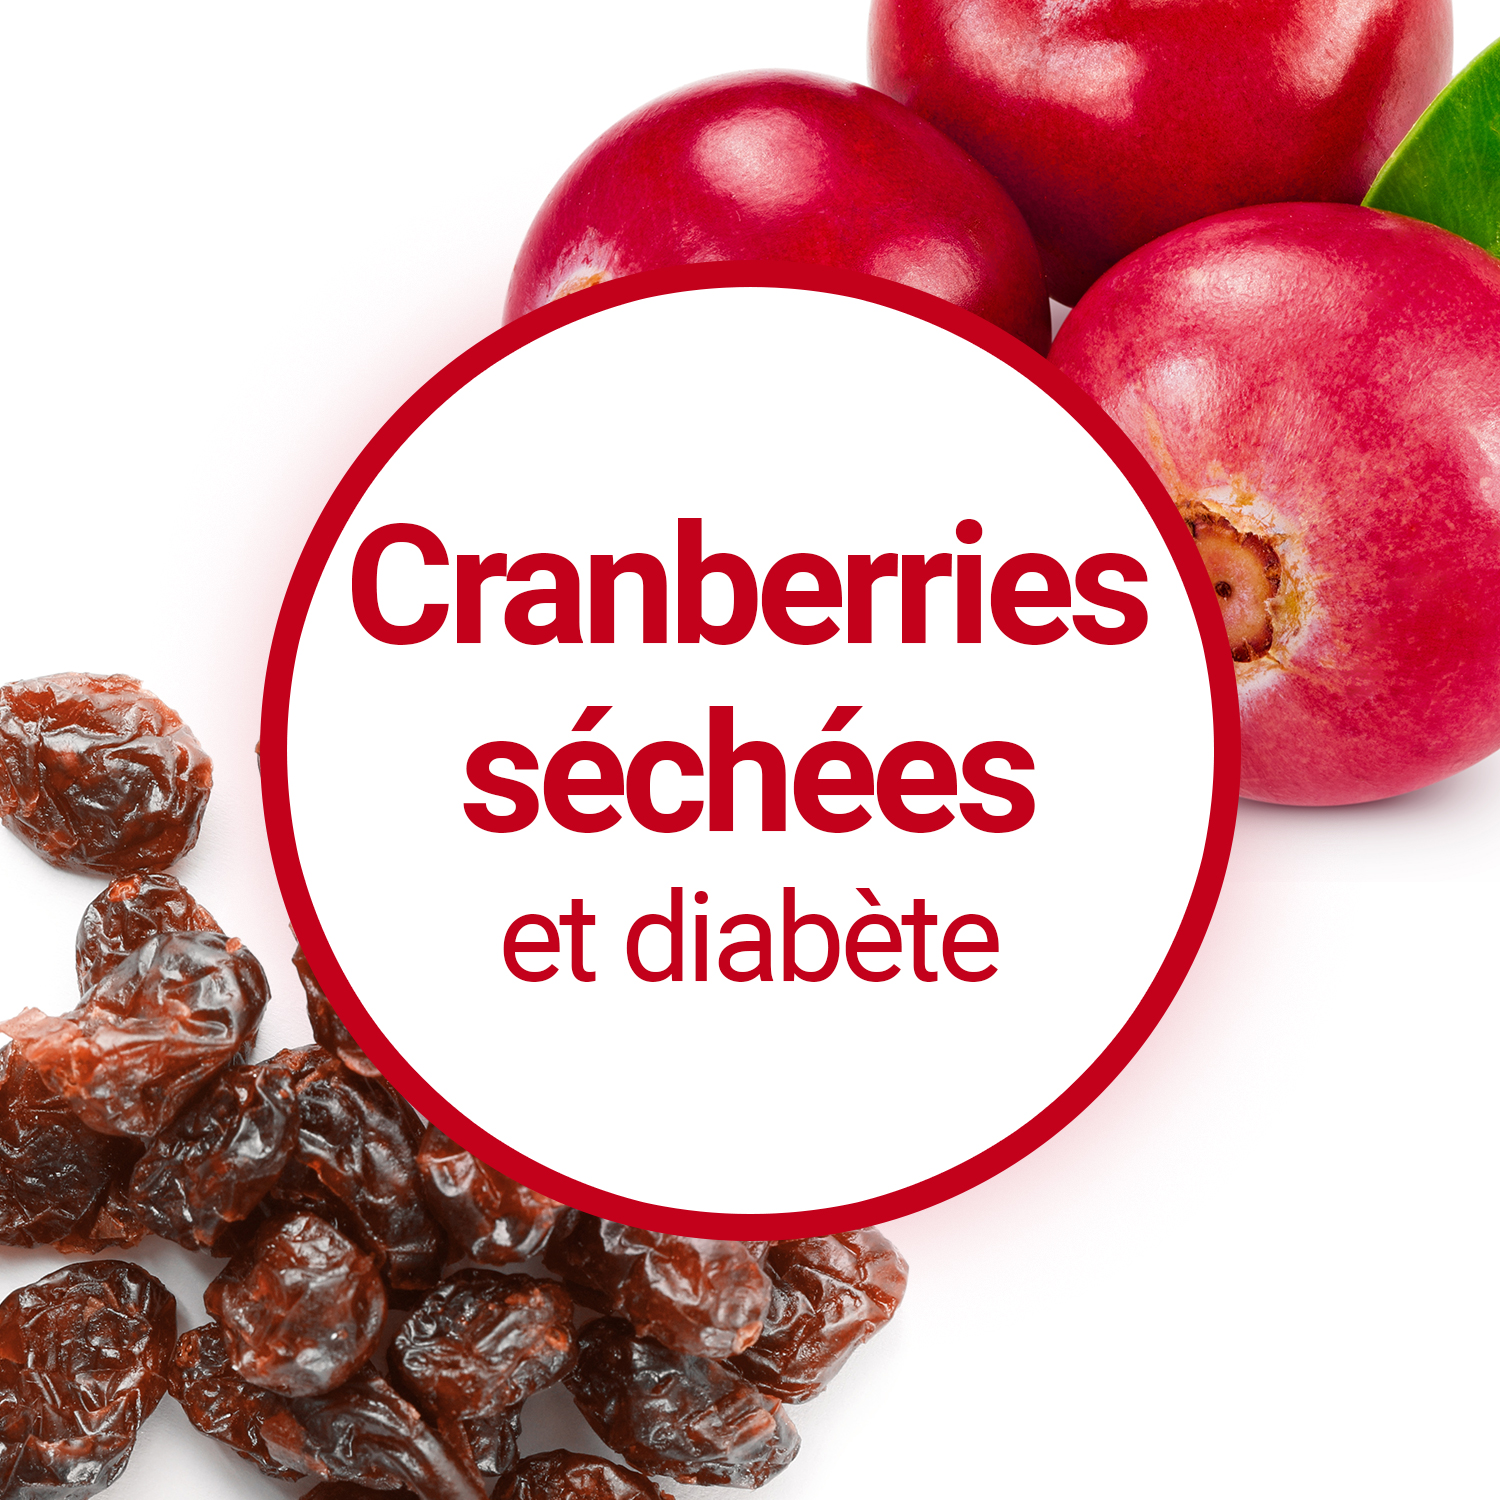 Les Cranberries peuvent-elles aider en cas de diabète ?